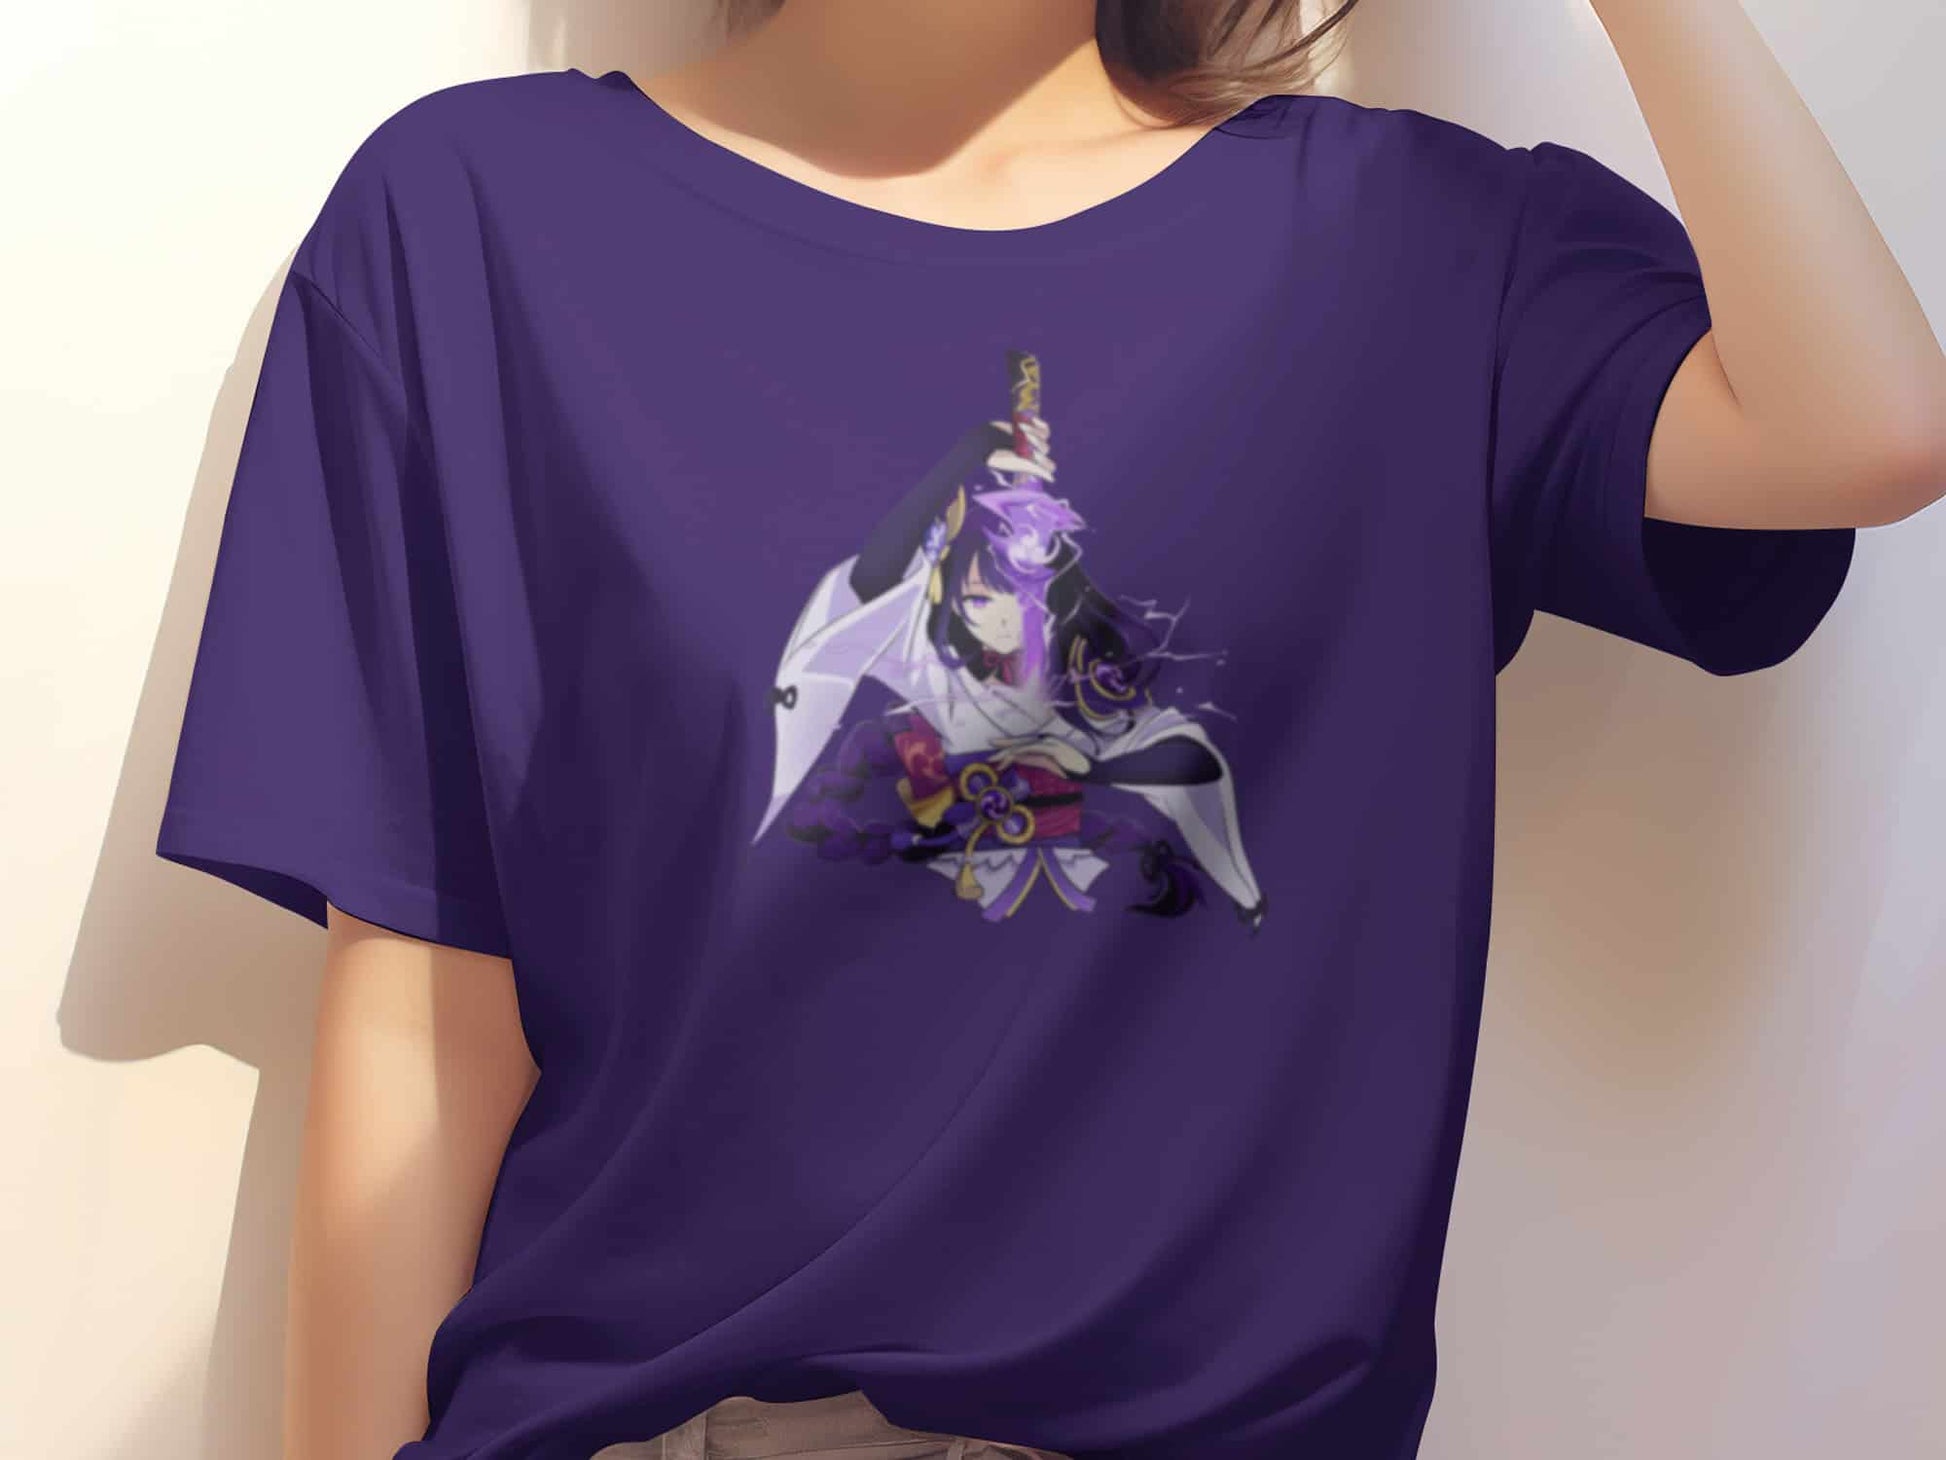 Raiden Shogun Shirt (Limited Edition Fan Made) - Purple